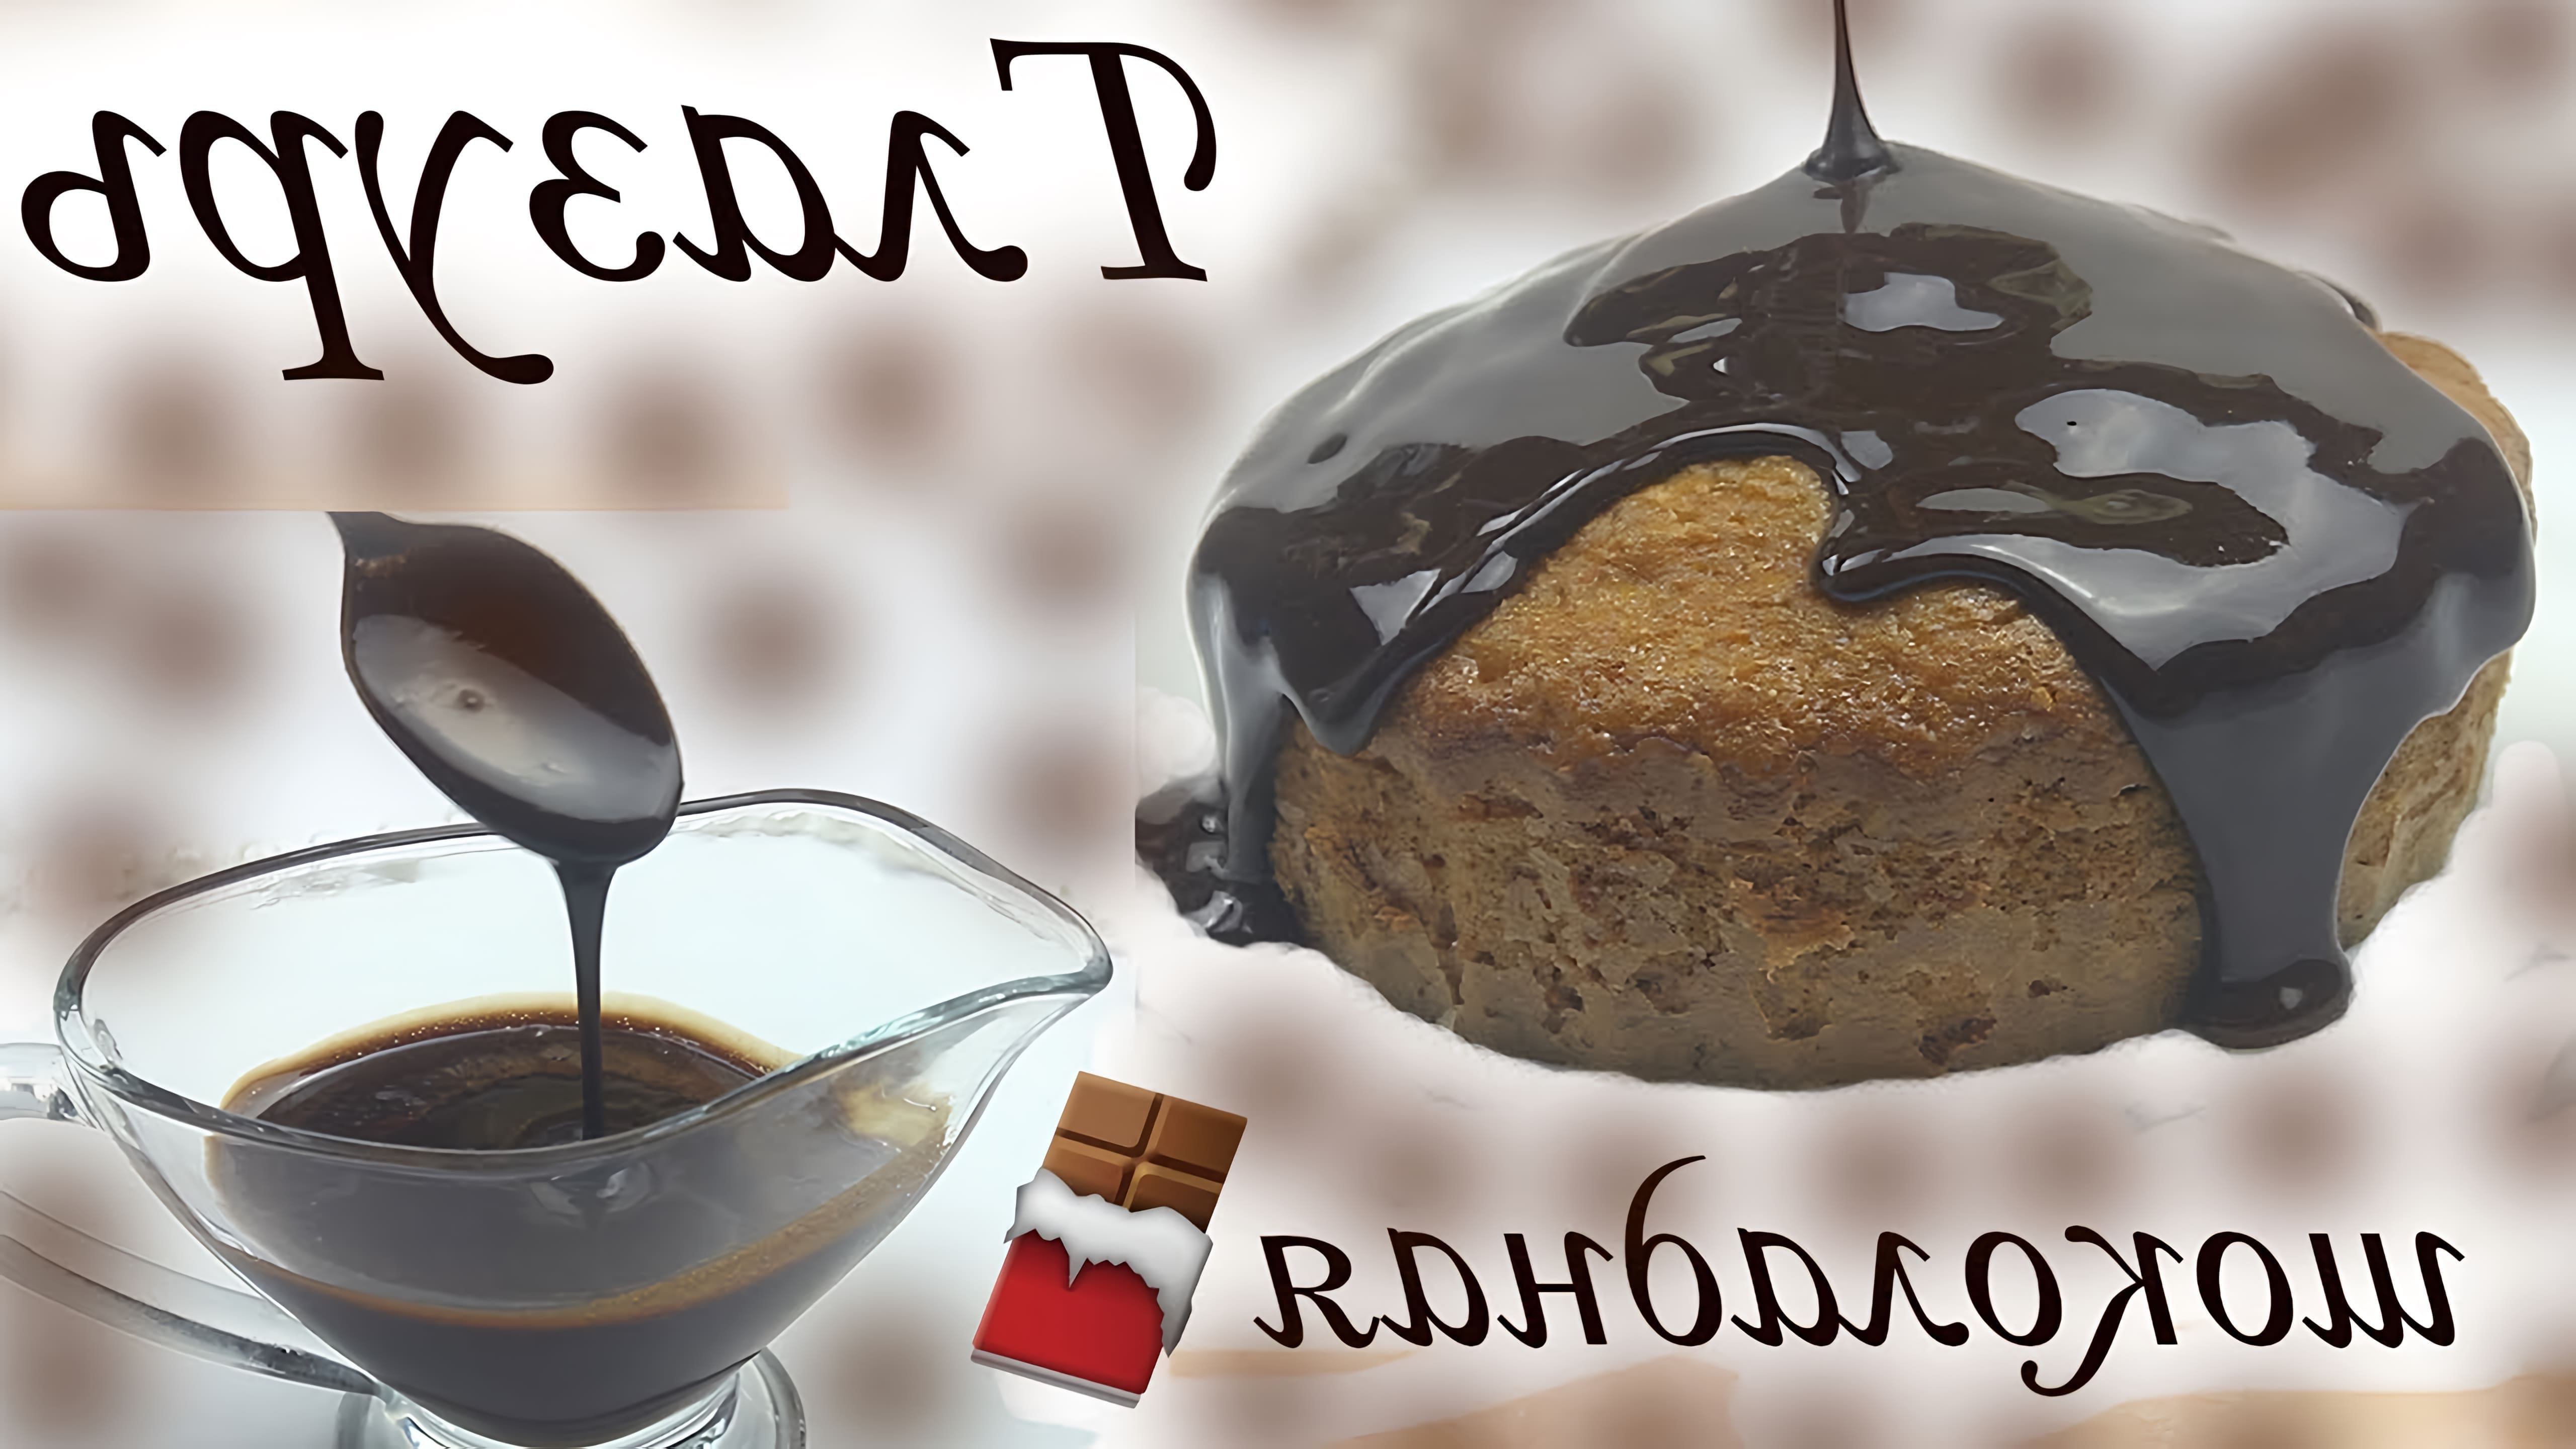 Видео как приготовить питательную шоколадную глазурь дома, используя всего 3 ингредиента - мед, какао-порошок и молоко